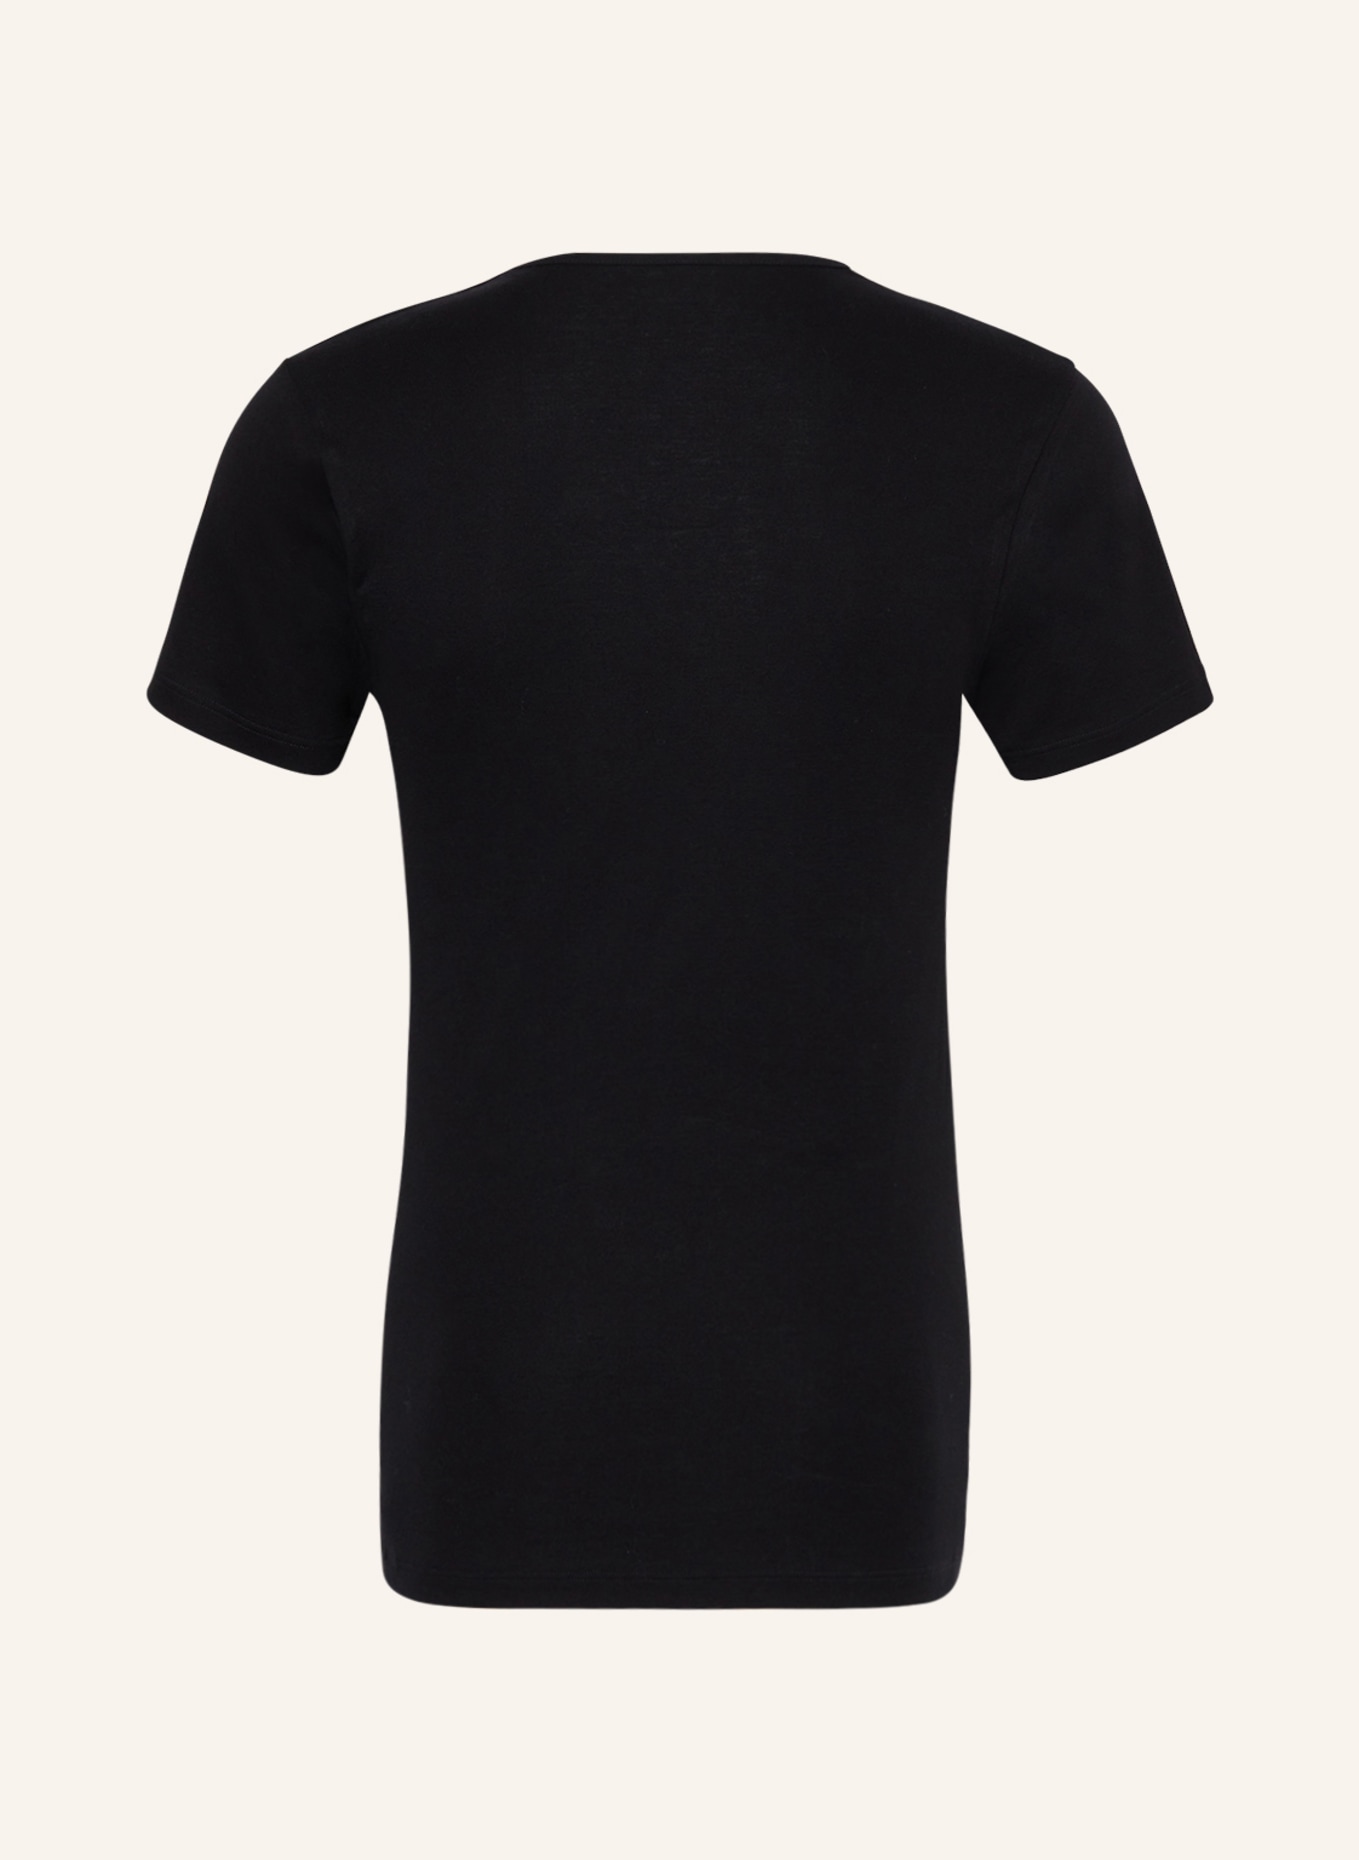 mey V-neck shirt series SENSUAL COTTON, Color: BLACK (Image 2)